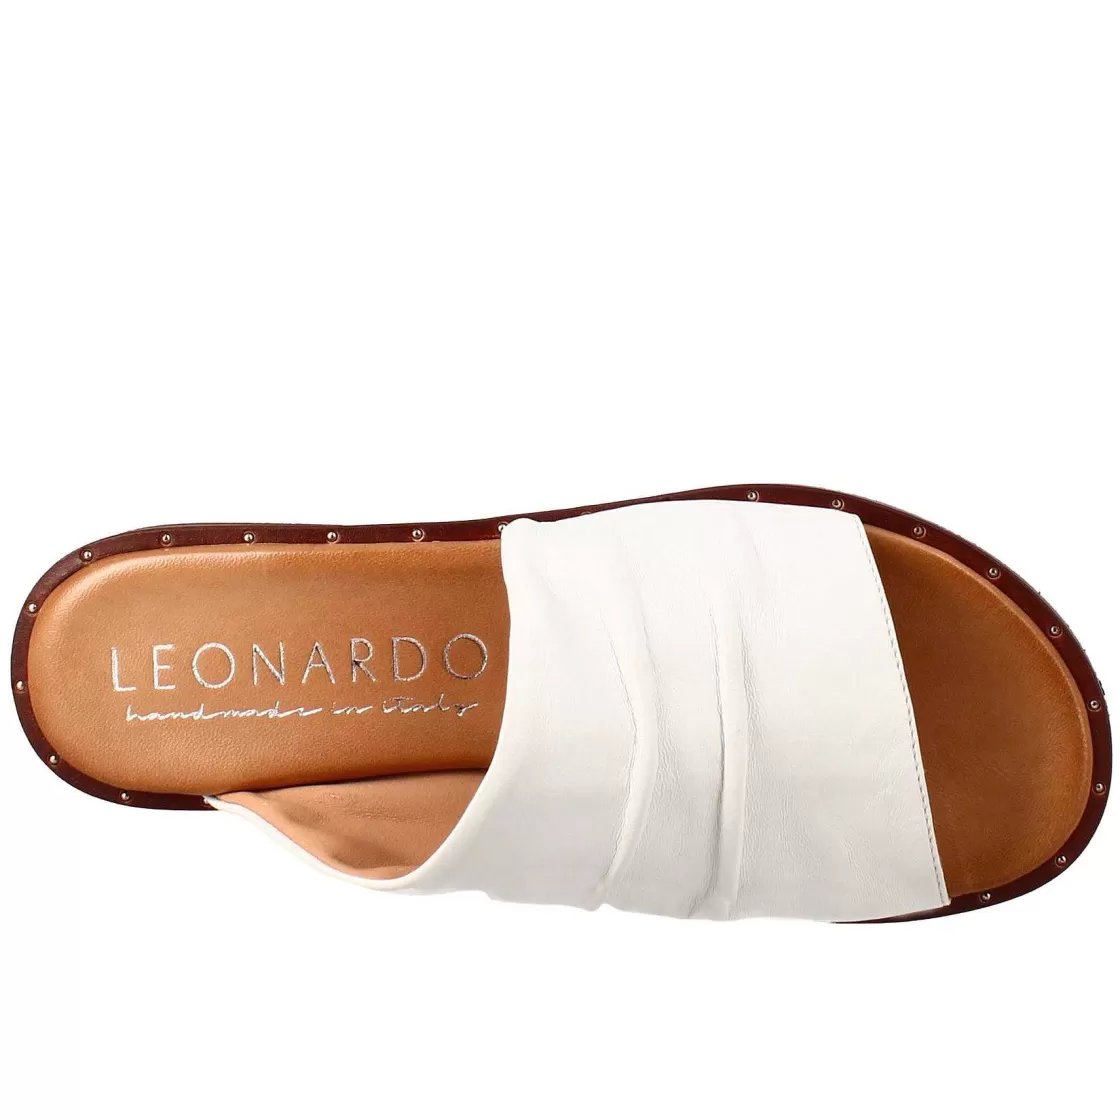 Leonardo Women'S Band Sandal In White Leather Best